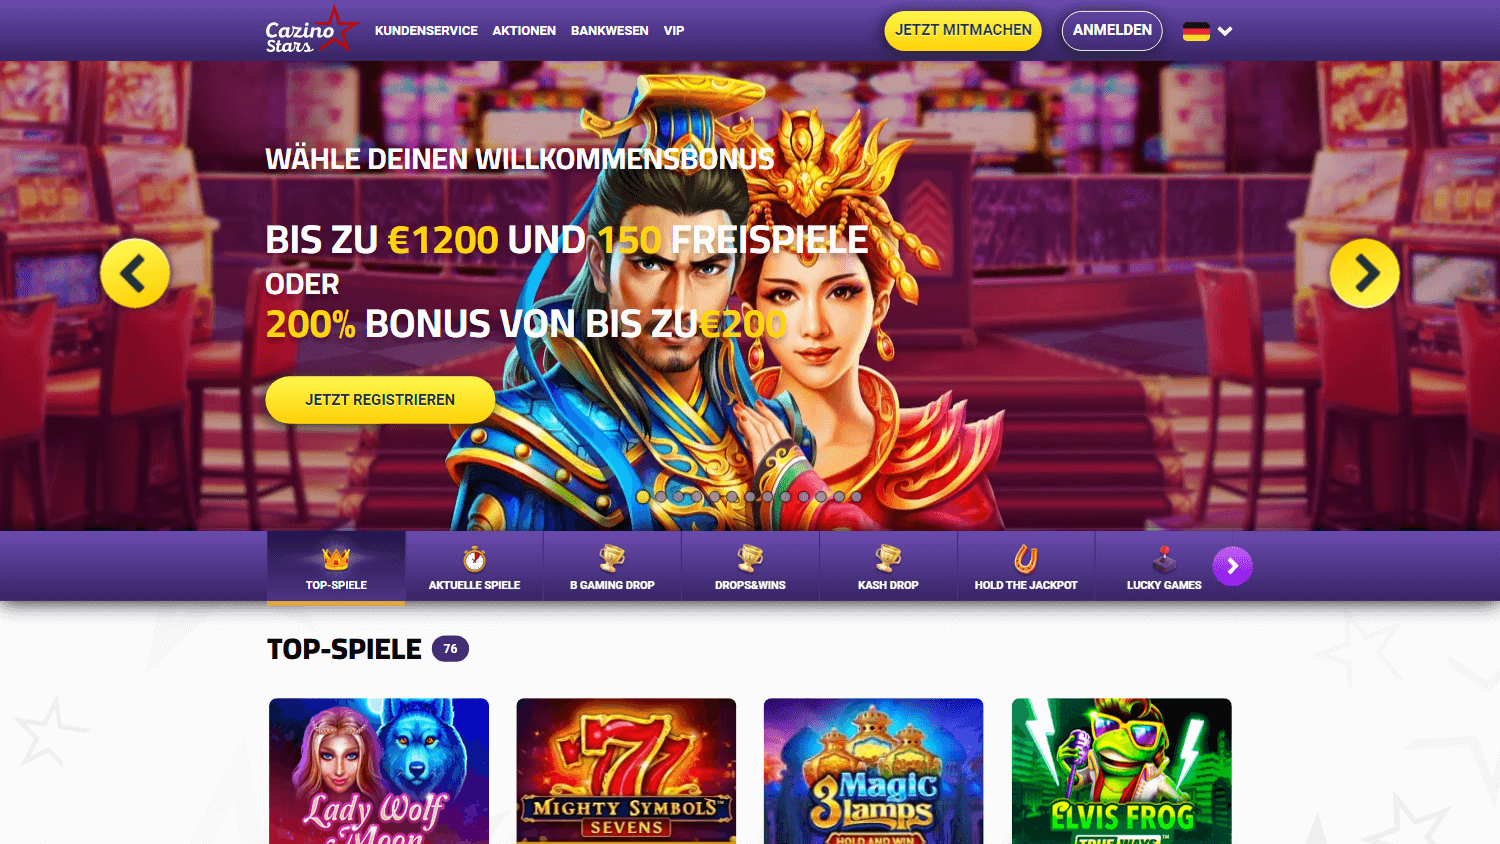 cazinostars_casino_homepage_desktop